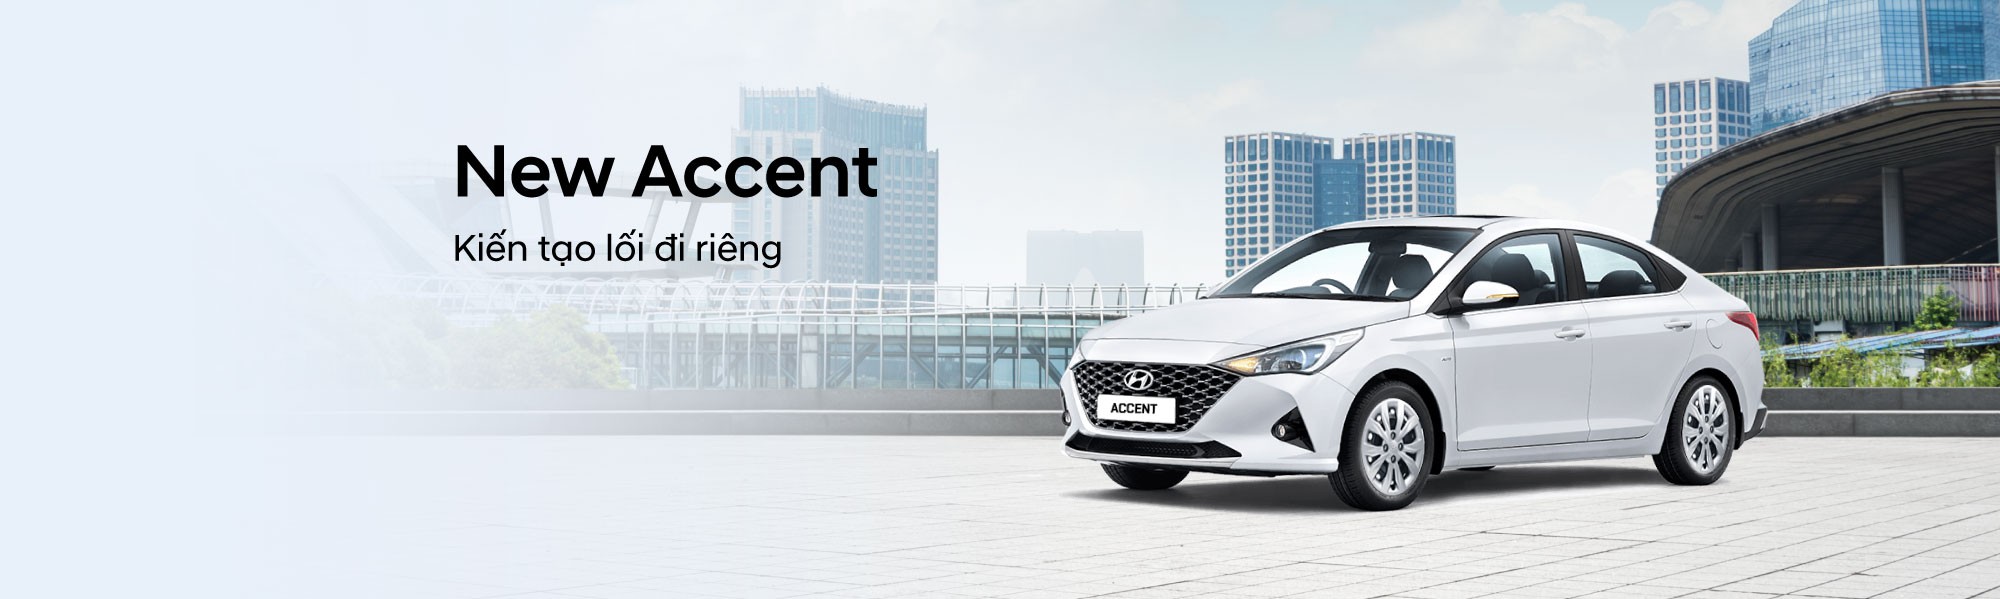 Hyundai Thái Bình - Đại lý ủy quyền của TC Motor